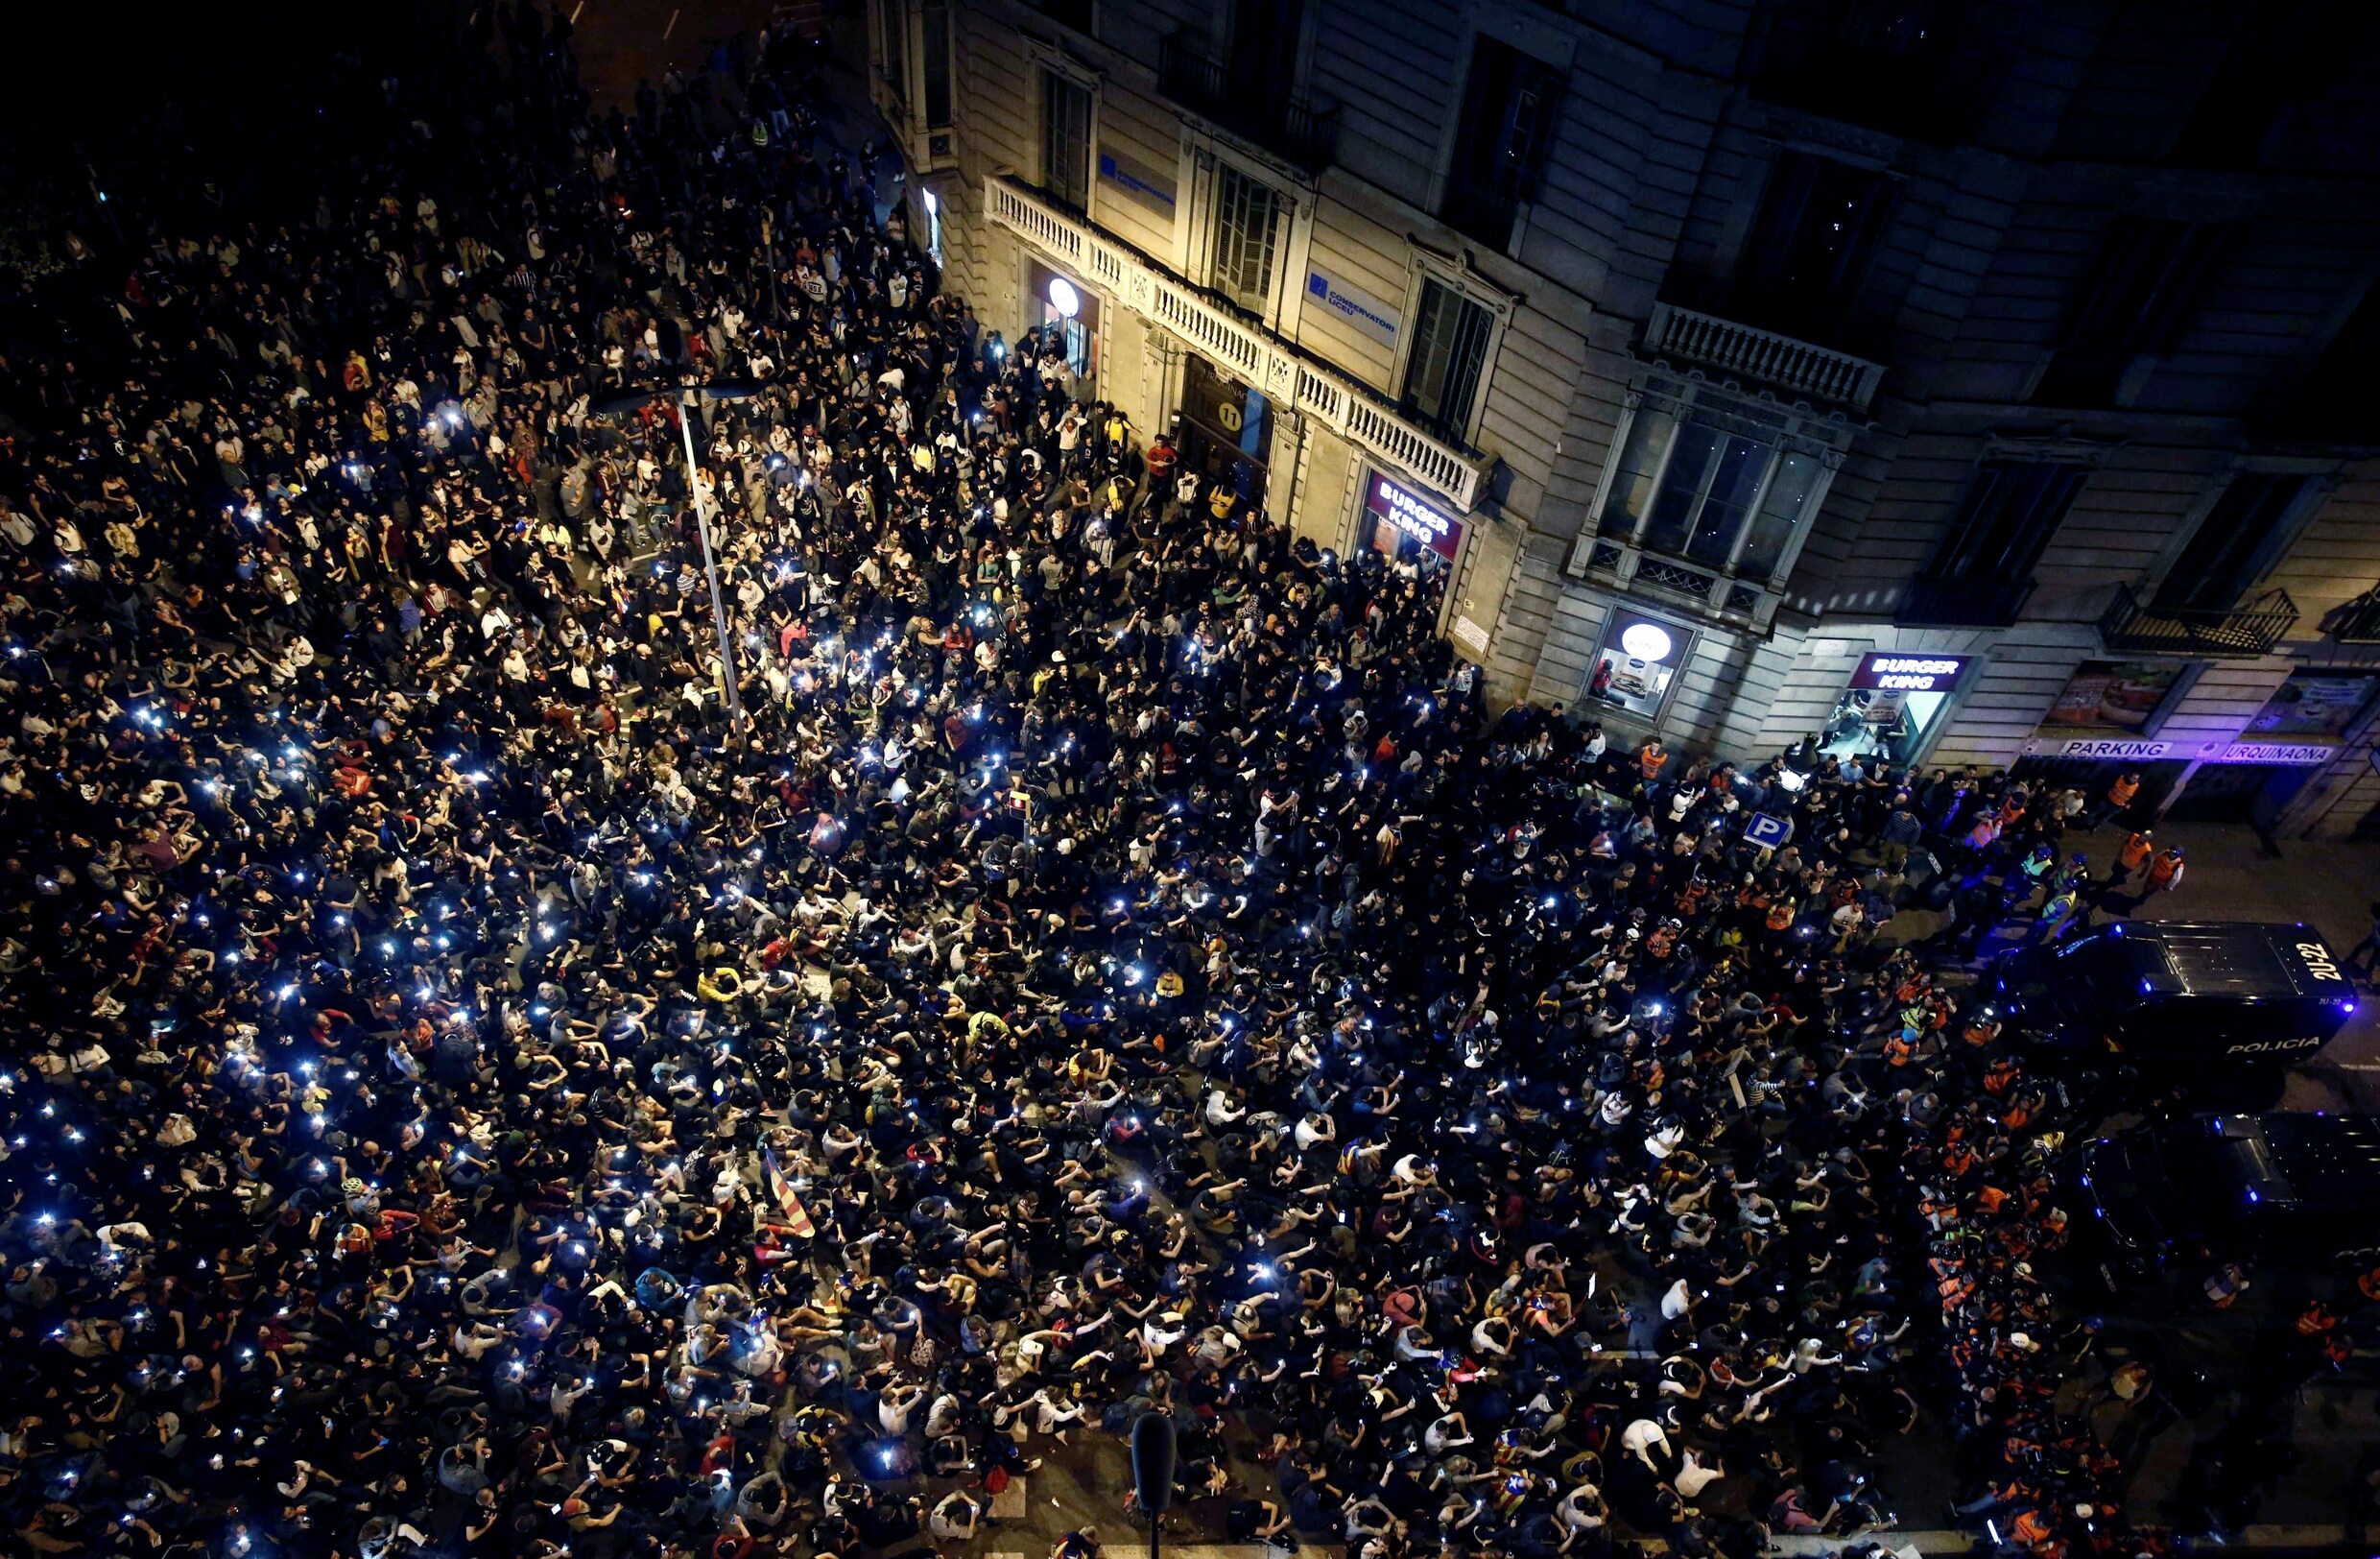 Gematige Catalanen vinden manier om relschoppers tegen te houden in Barcelona